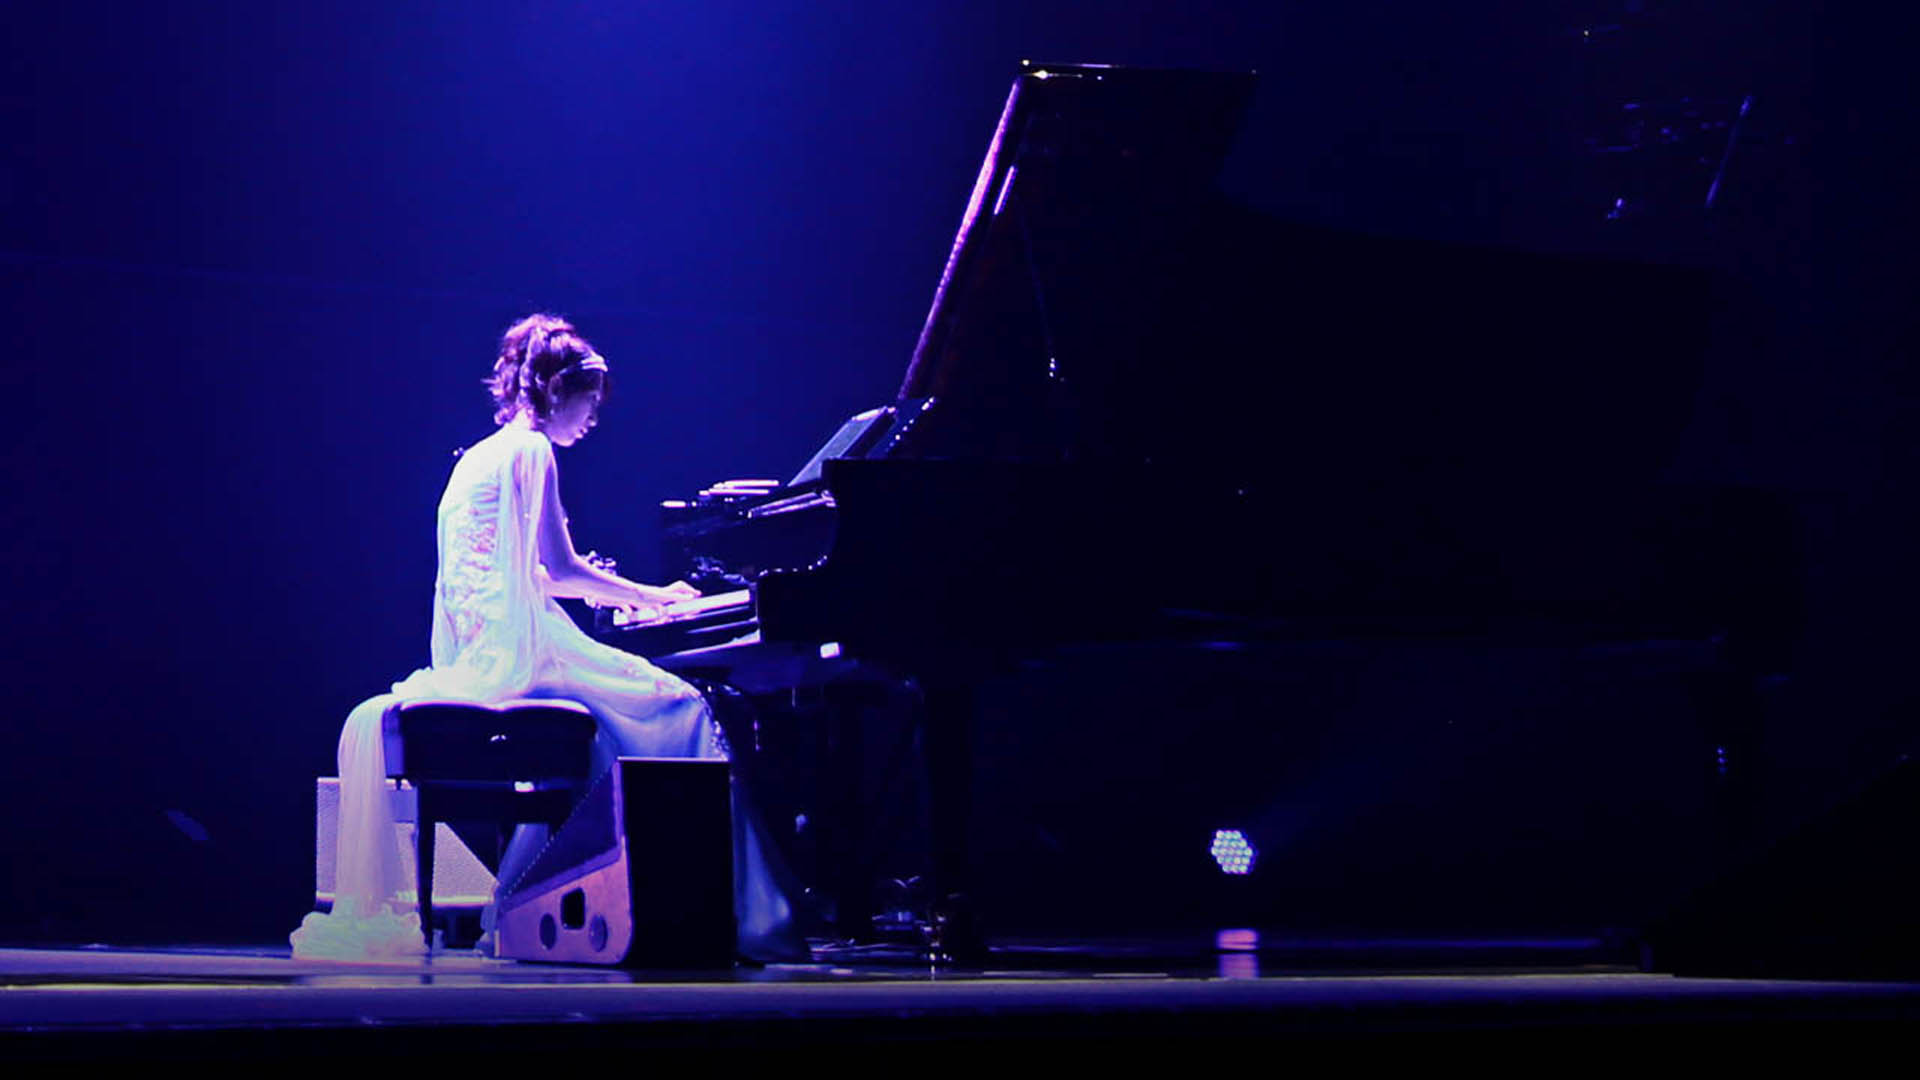 کیکو پیانو کھیل رہا ہے۔